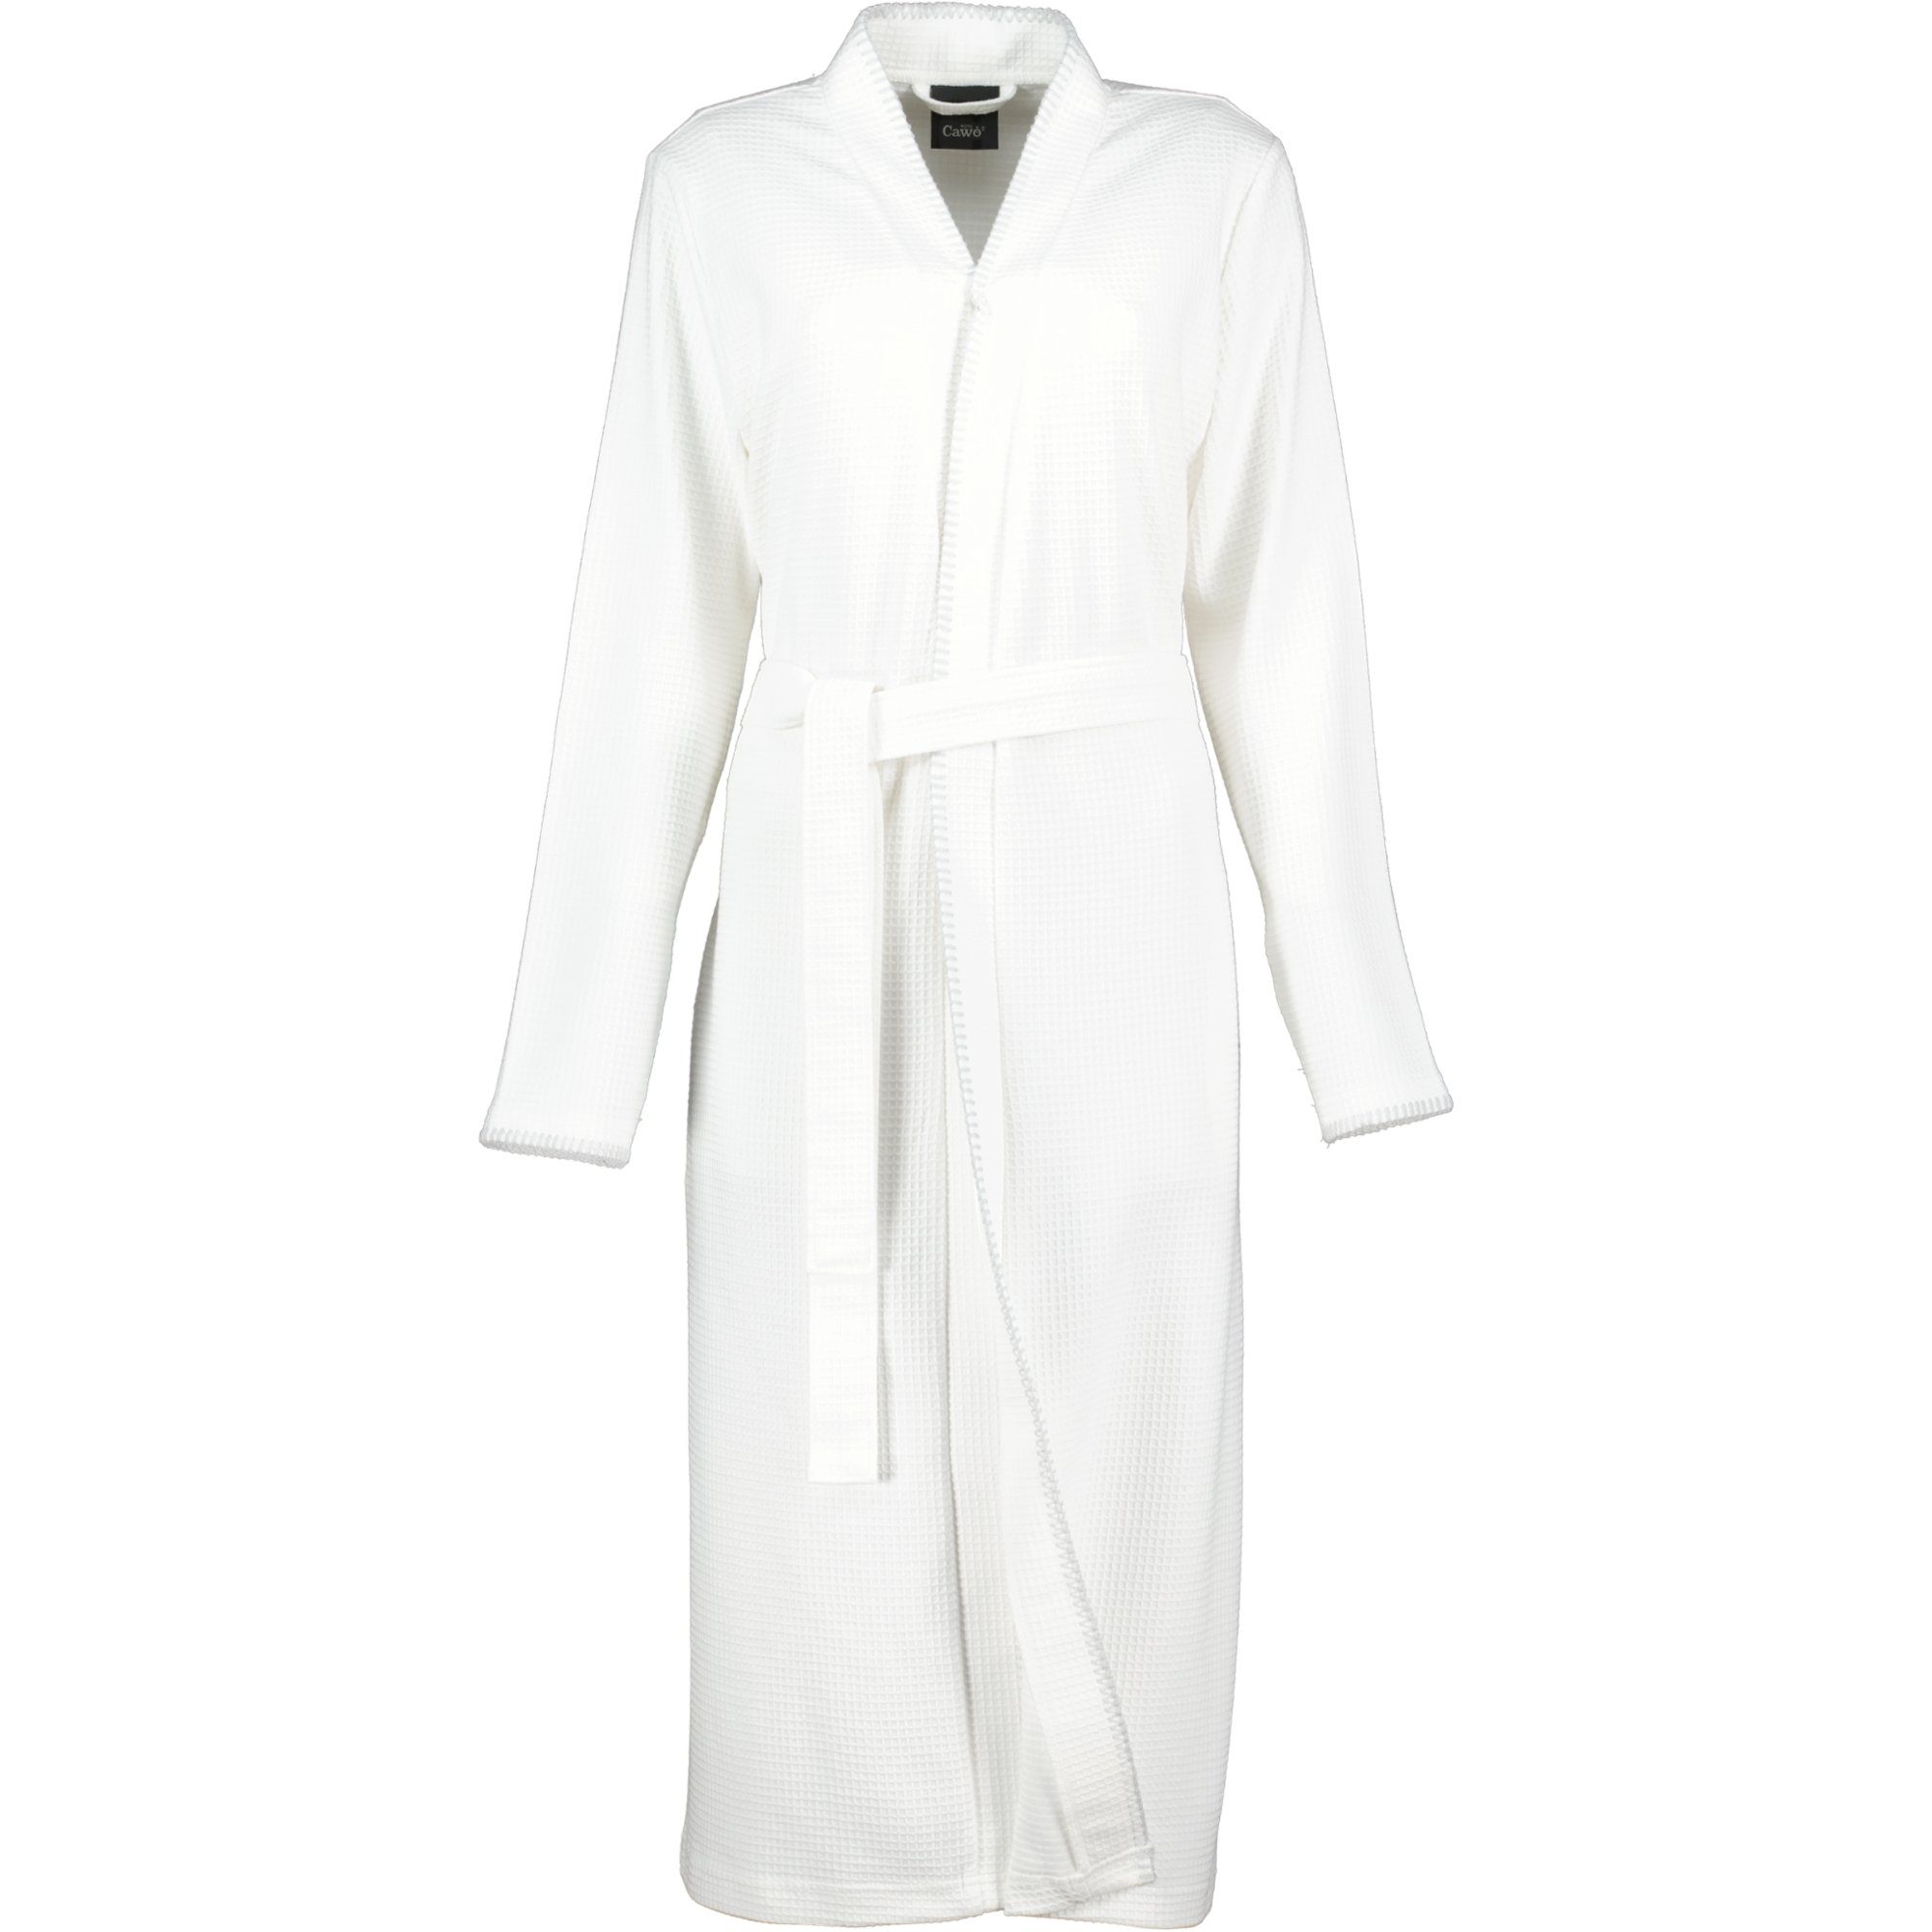 Home 812 Cawö Kimono Baumwolle, % (67) Kimono, Pique, extraleicht Damenbademantel Weiß Pique 100